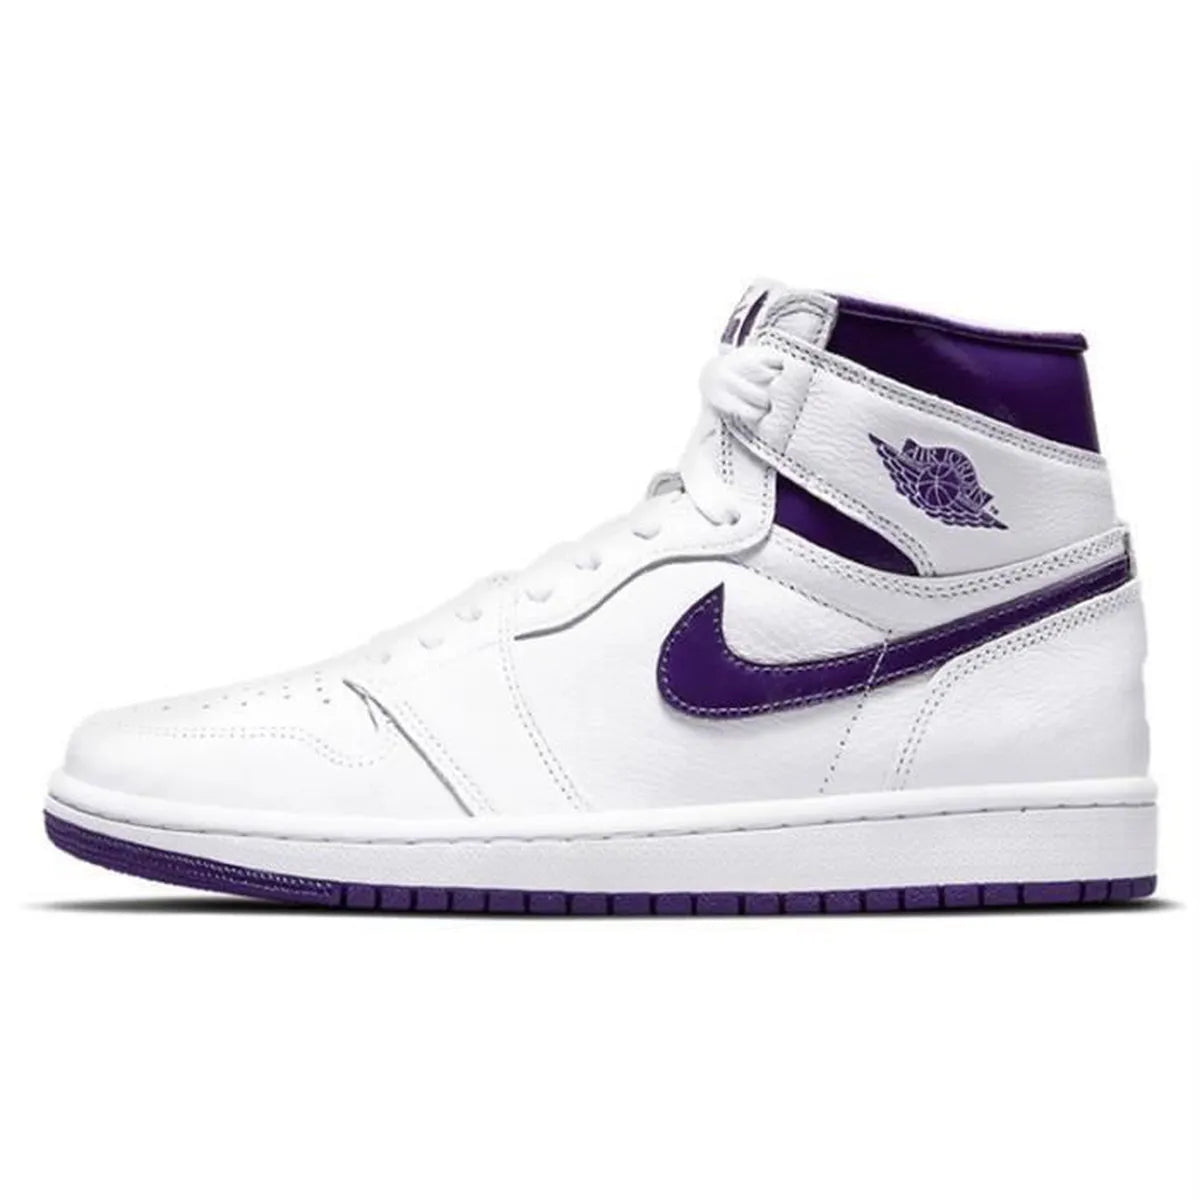 Air Jordan 1 OG "Court Purple